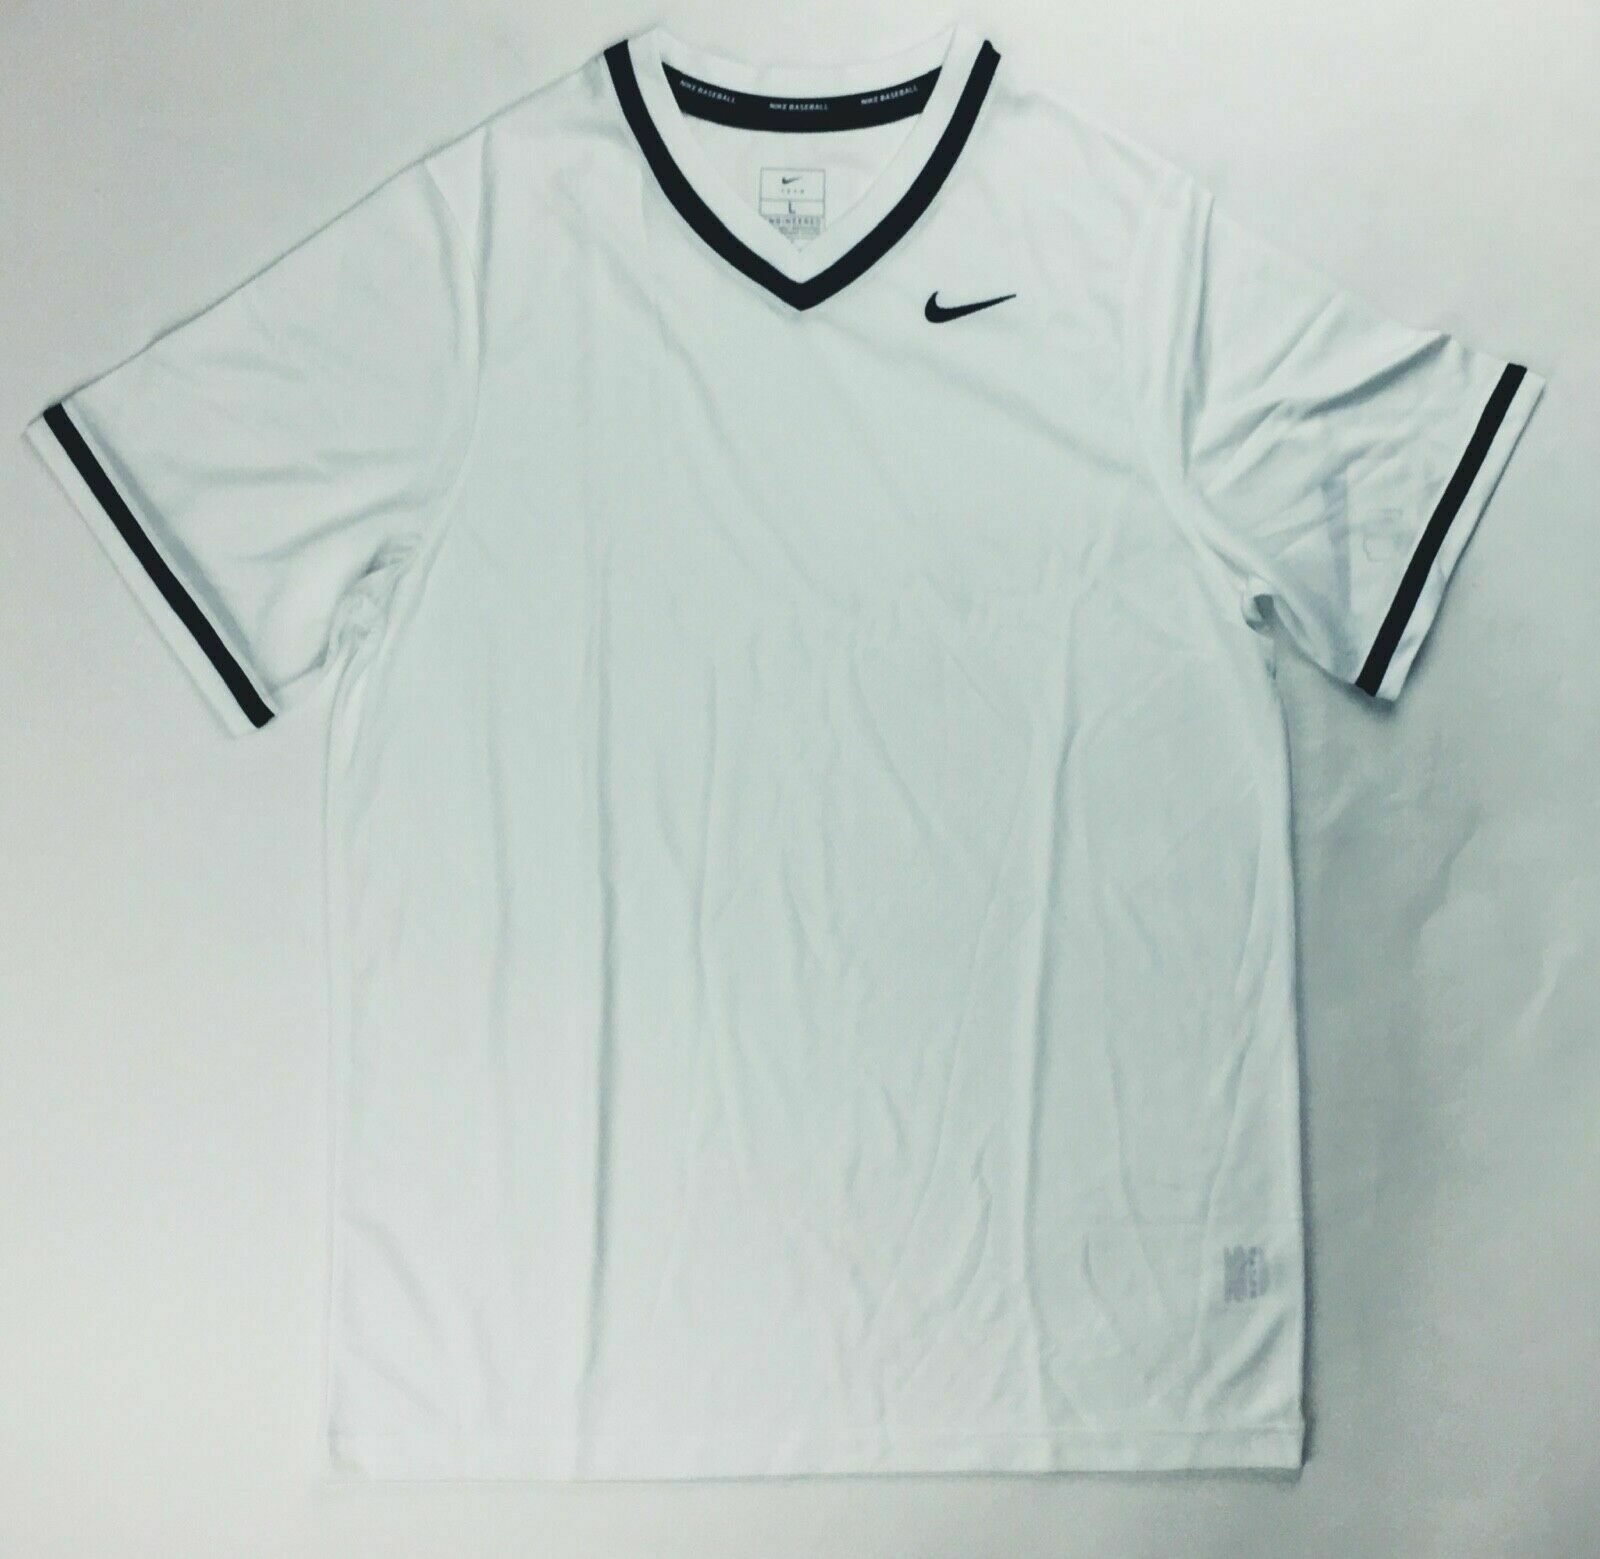 Primary image for Nike Stock Vapor Select V-Neck Baseball Jersey Men's Large White Black BQ5514